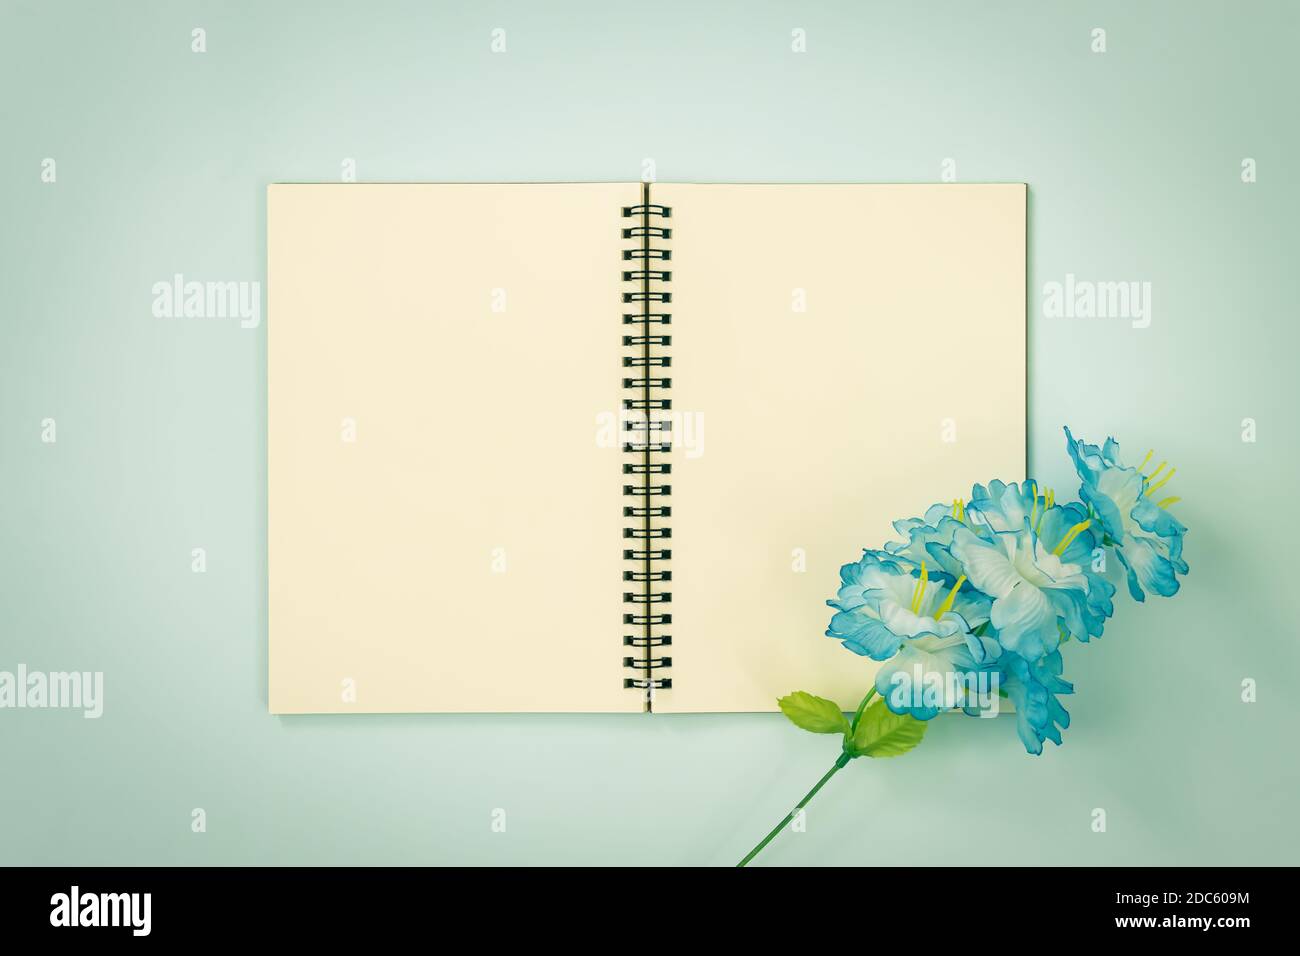 Tischchen Spiral Notizbuch oder Feder Notizbuch Mockup in ungefüttert Tippen Sie auf Mittelrahmen und blaue Blumen unten rechts Ecke auf Blau Pastell minimalistisch Stockfoto